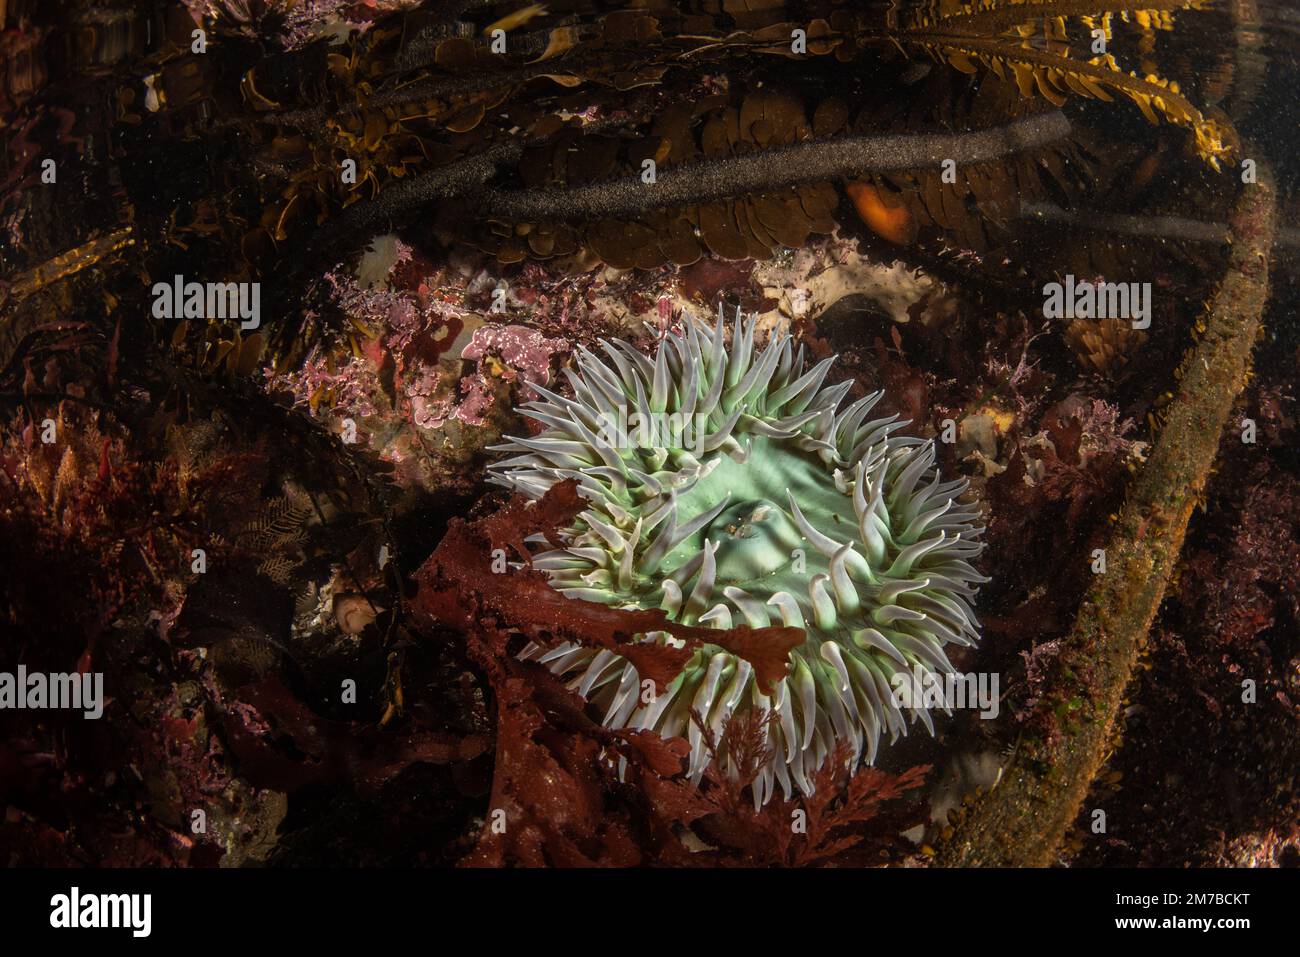 Anemone verde gigante (Anthopleura xanthogramica) sott'acqua in una scuola di marea nella California costiera nella zona della baia di San Francisco. Foto Stock